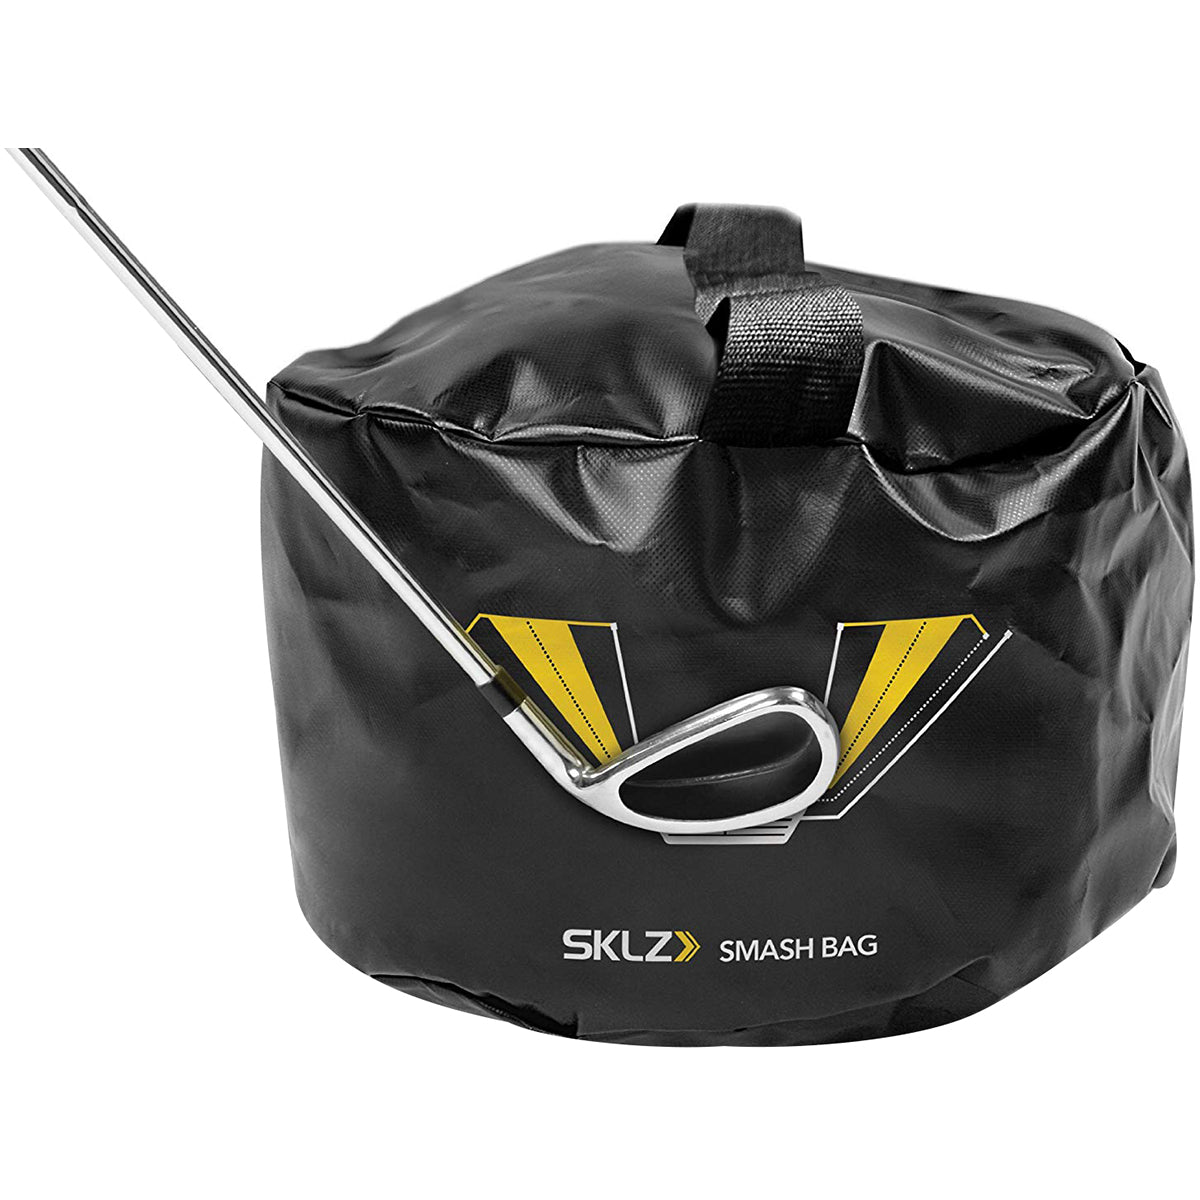 SKLZ Smash Bag Golf Impact Trainer - Black SKLZ